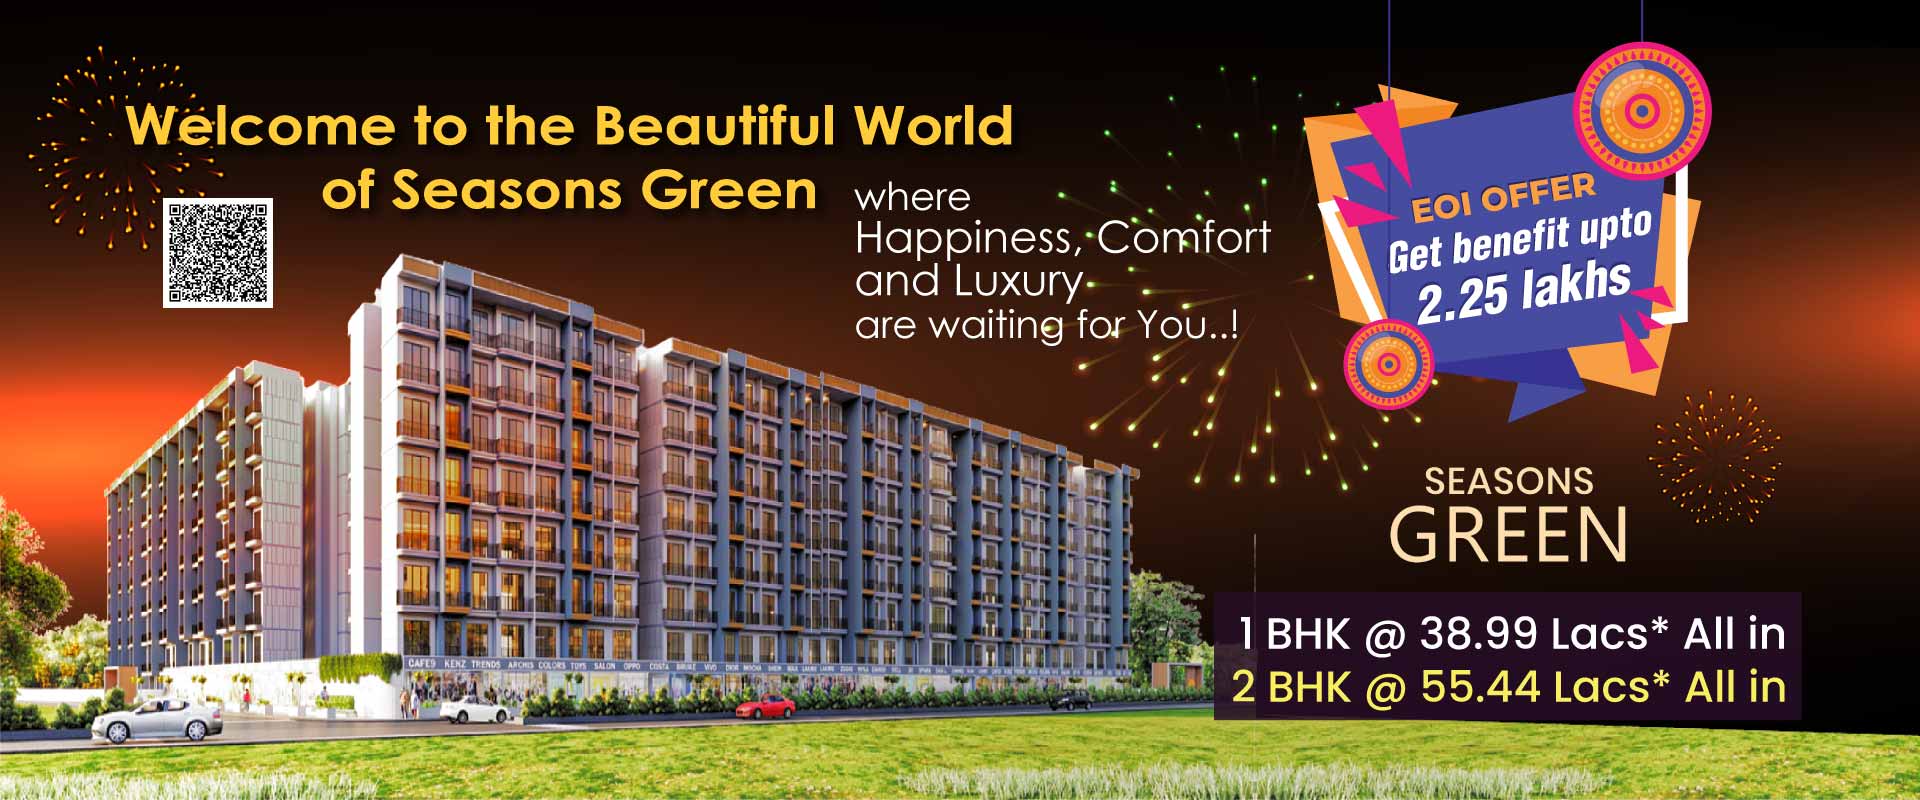 2 bhk flat kalyan - Seasons Green